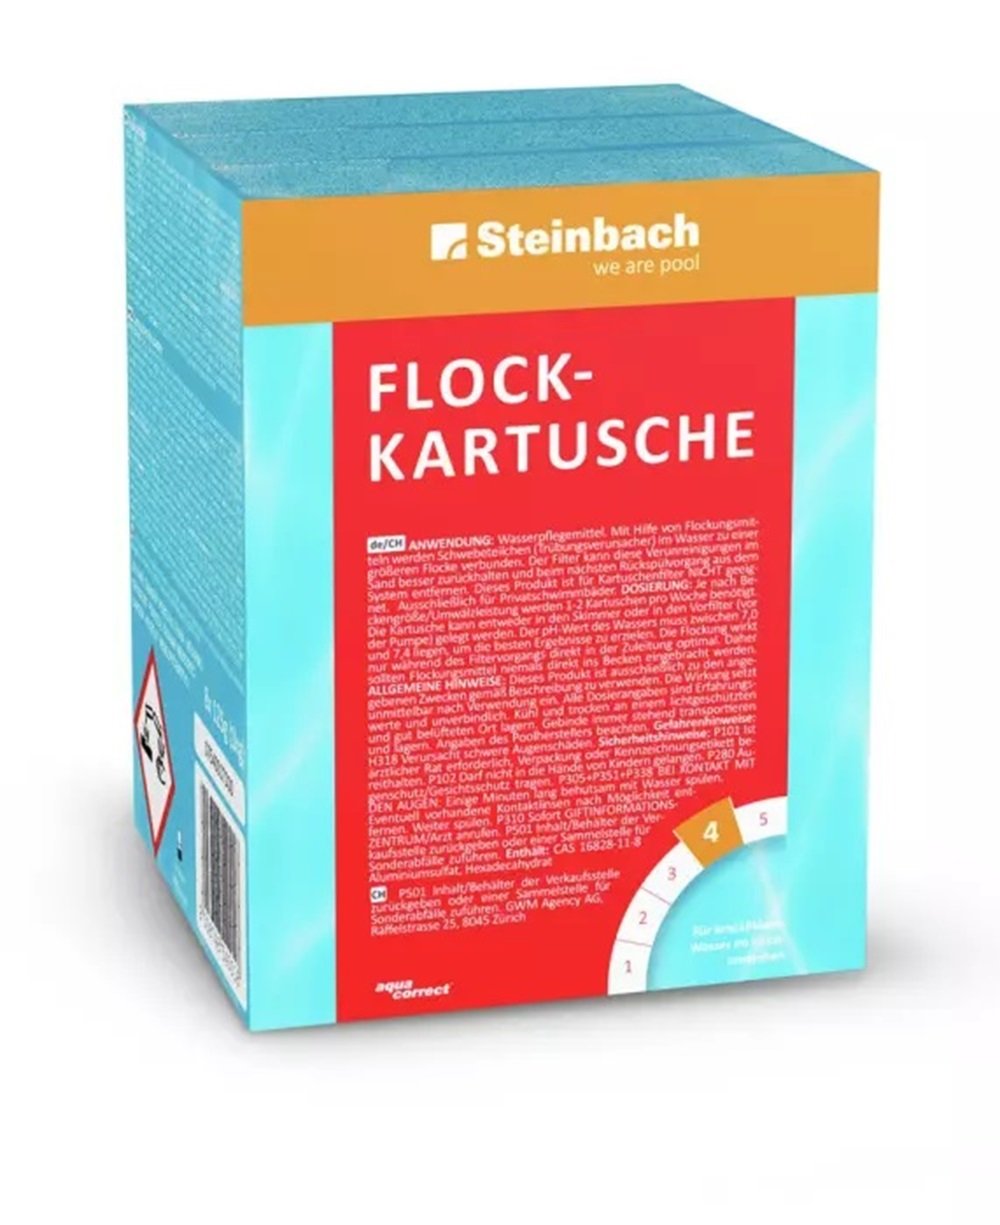 Steinbach Flockkartusche 1kg, Flockungsmittel Pool, Wasserpflege IN-0754001TDC8